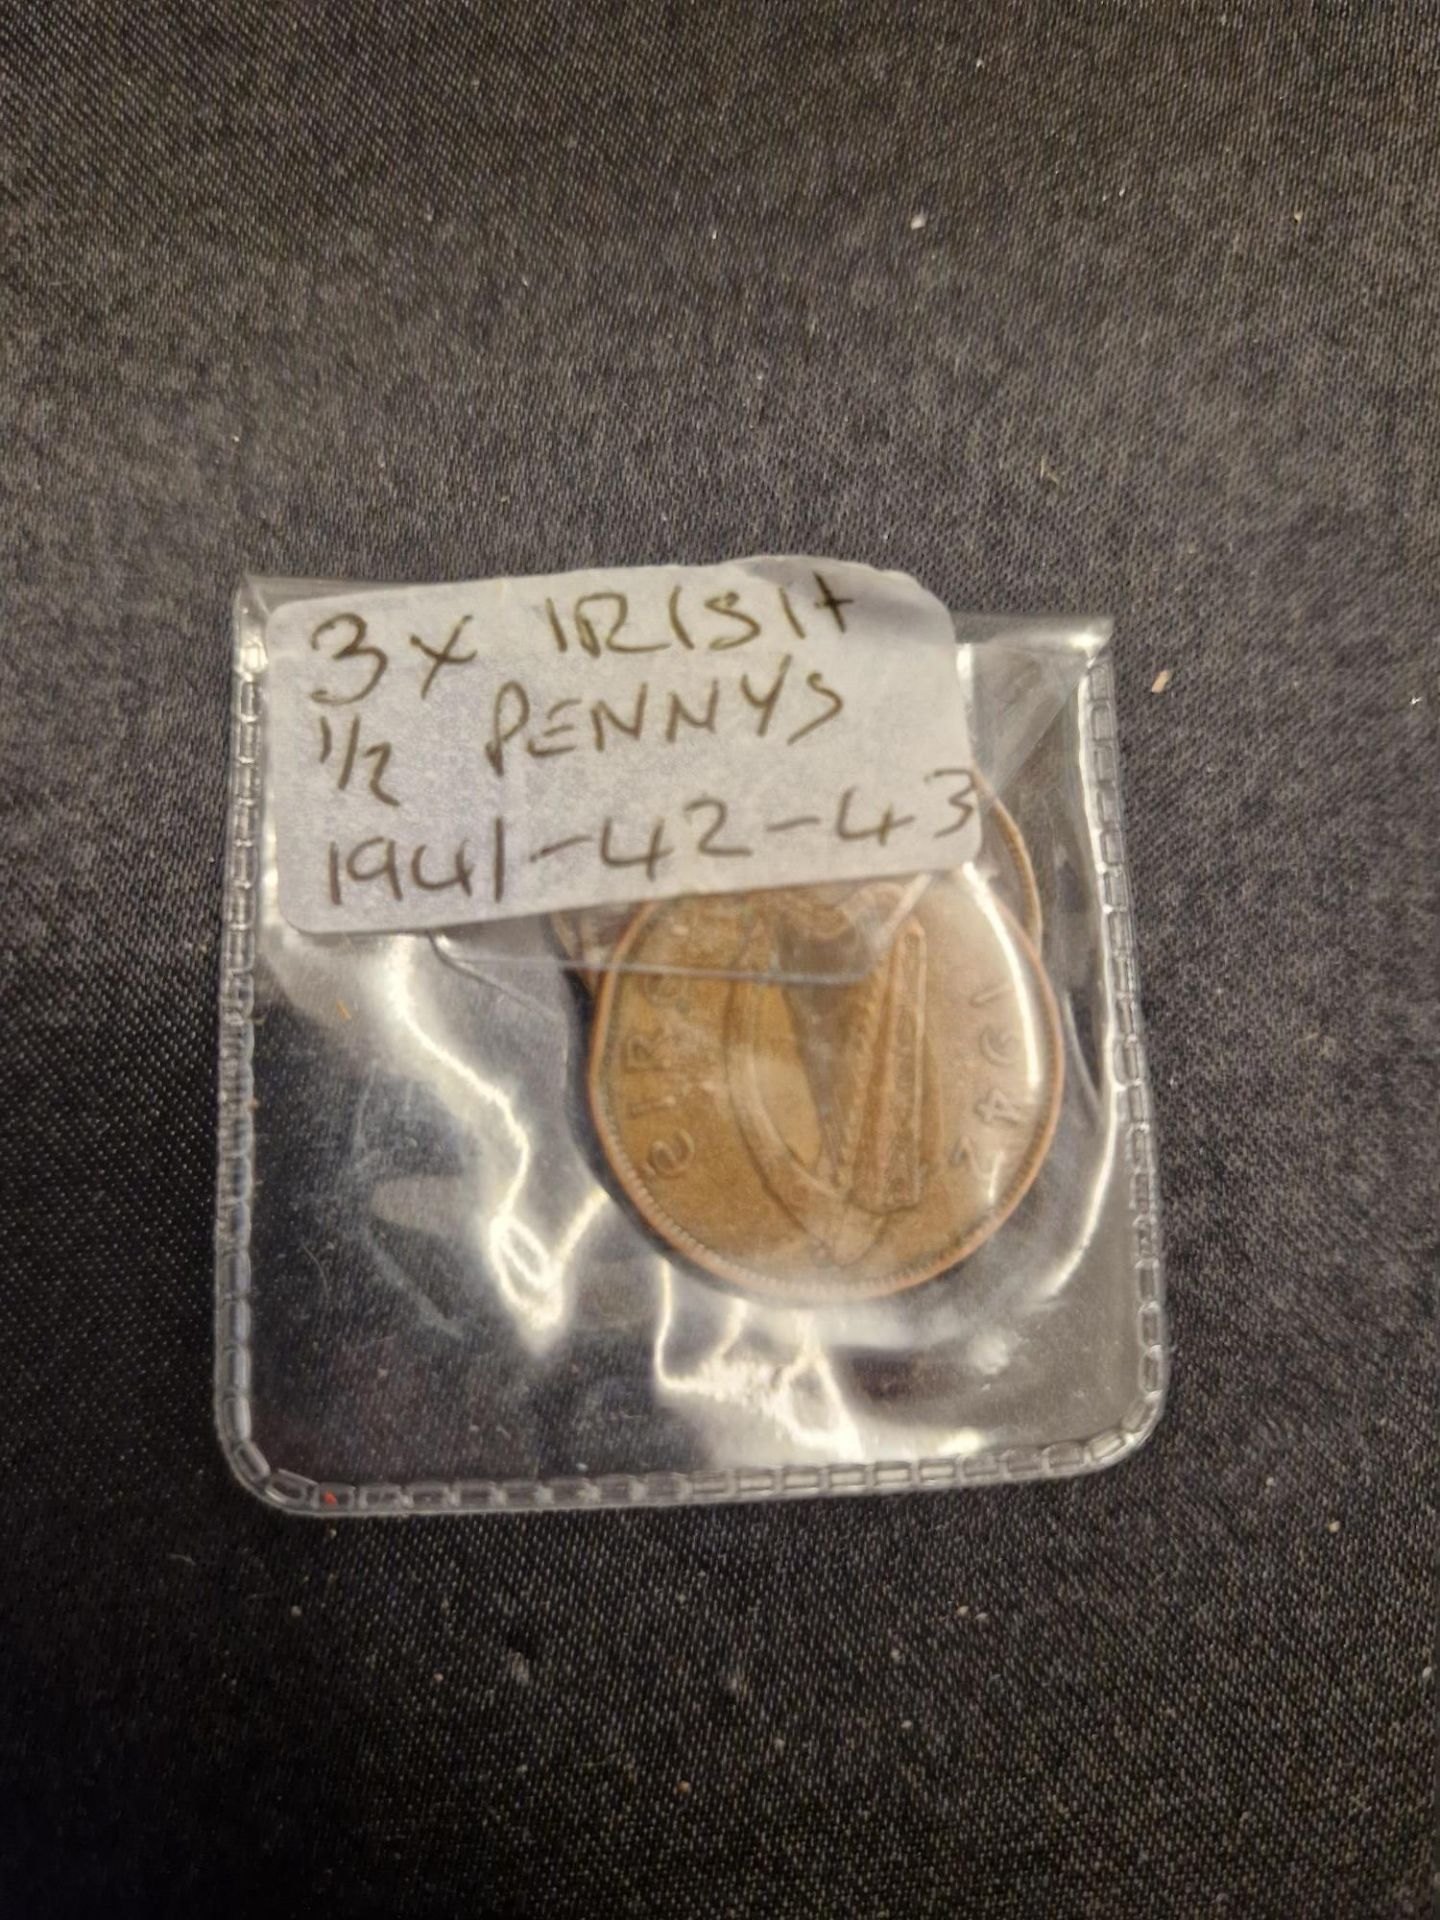 3 x irish 1/2 pennys 1941 - 42 - 63